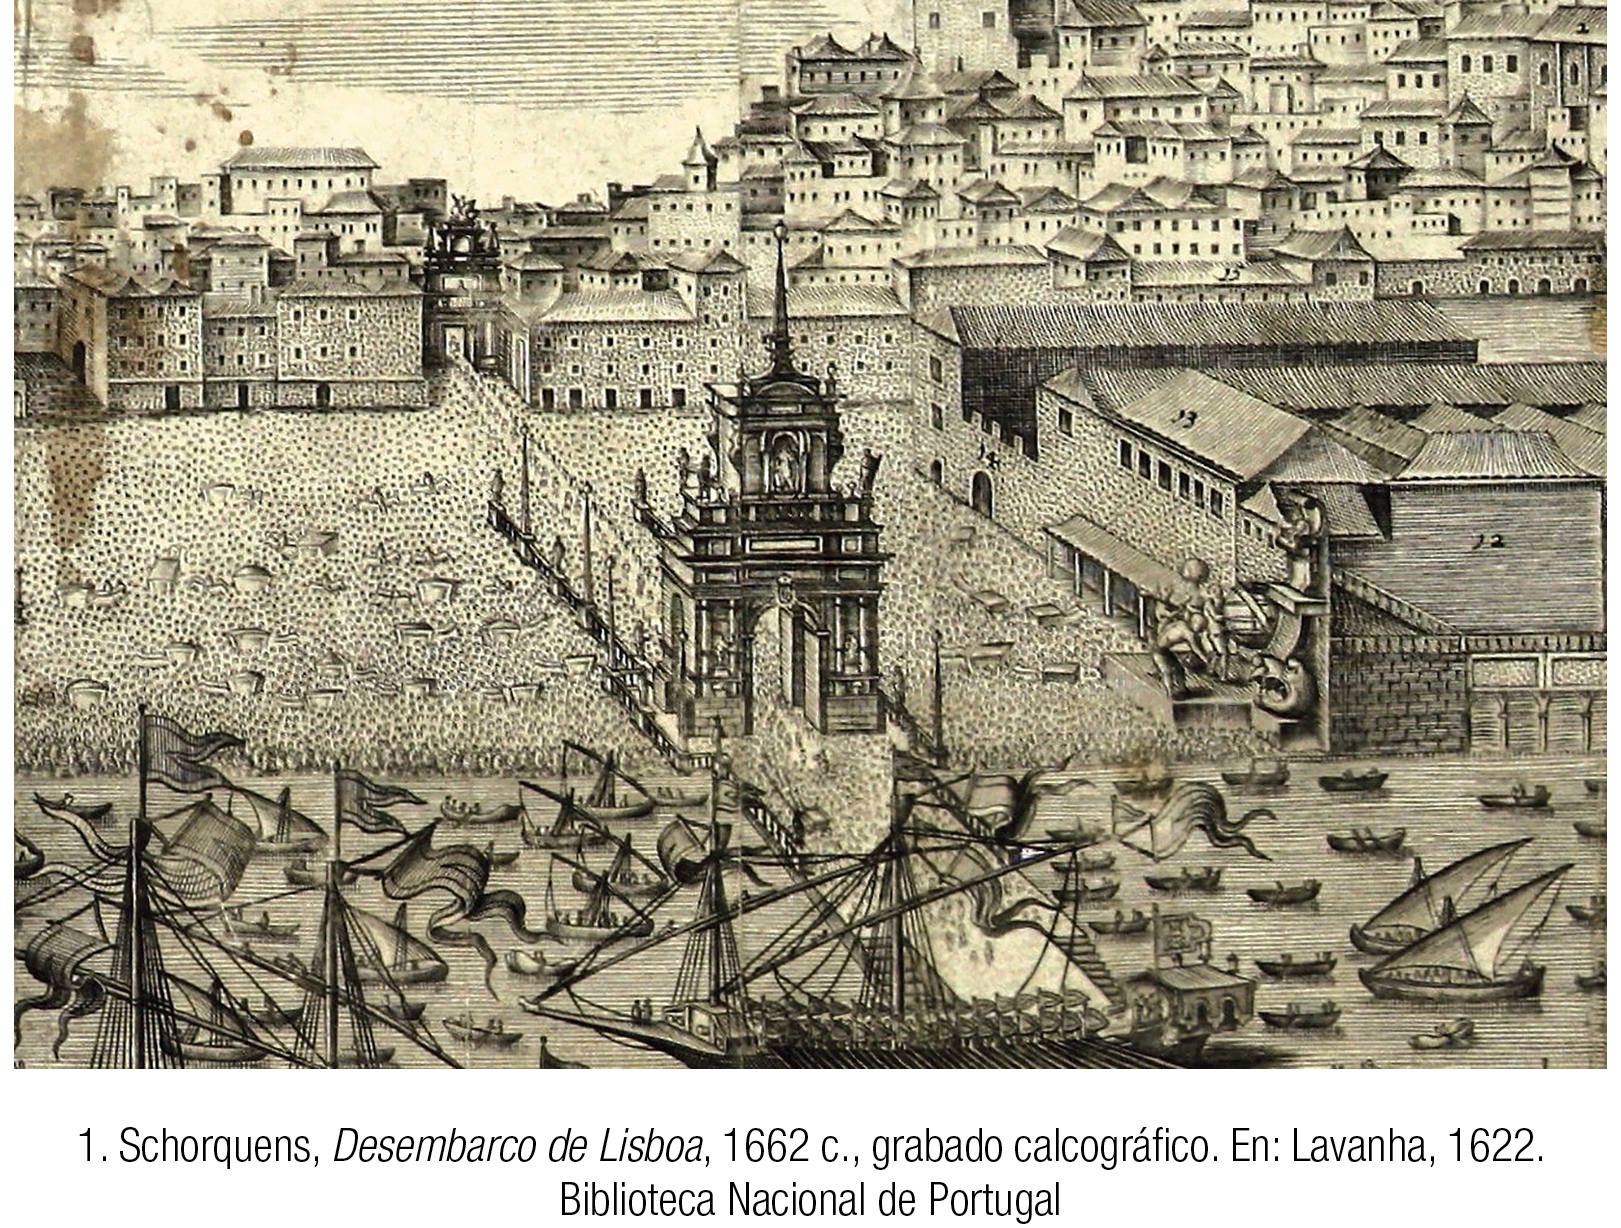 Giulio Romano Caída de los gigantes, 1532: Descripción de la obra